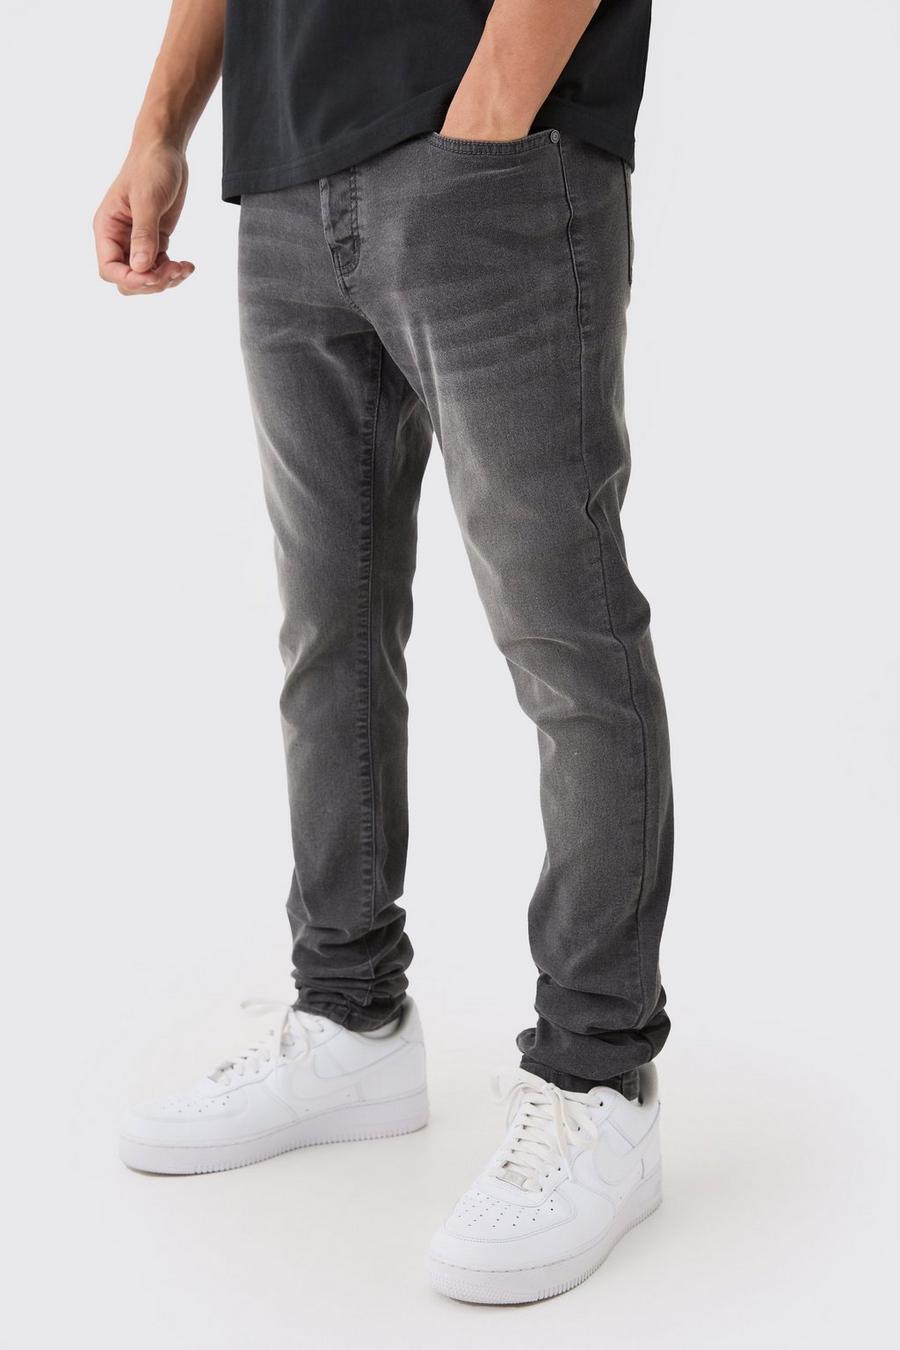 Jeans home сірі чоловічі штани брюки